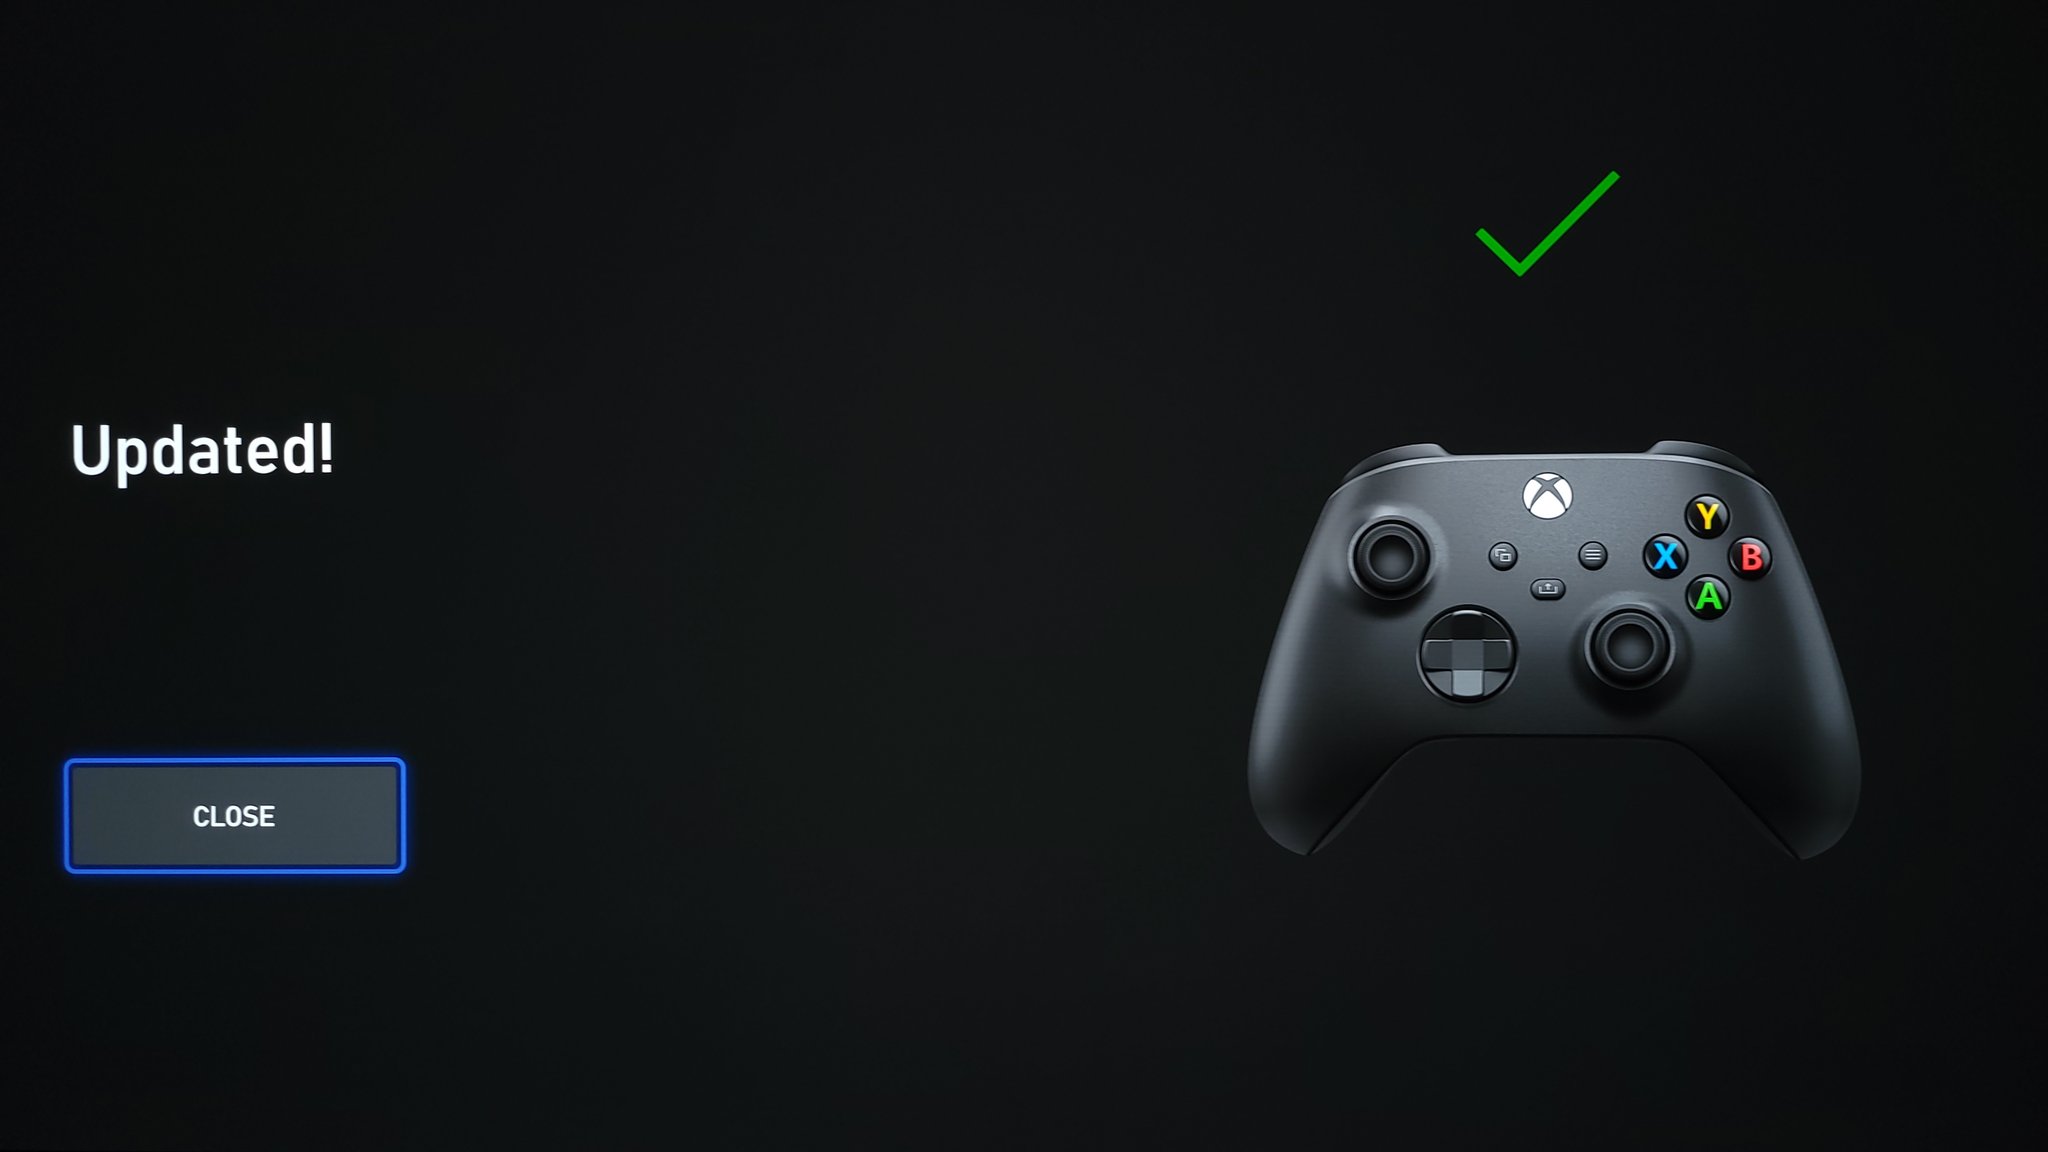 Вышло обновление для геймпада Xbox - его уже можно установить: с сайта NEWXBOXONE.RU